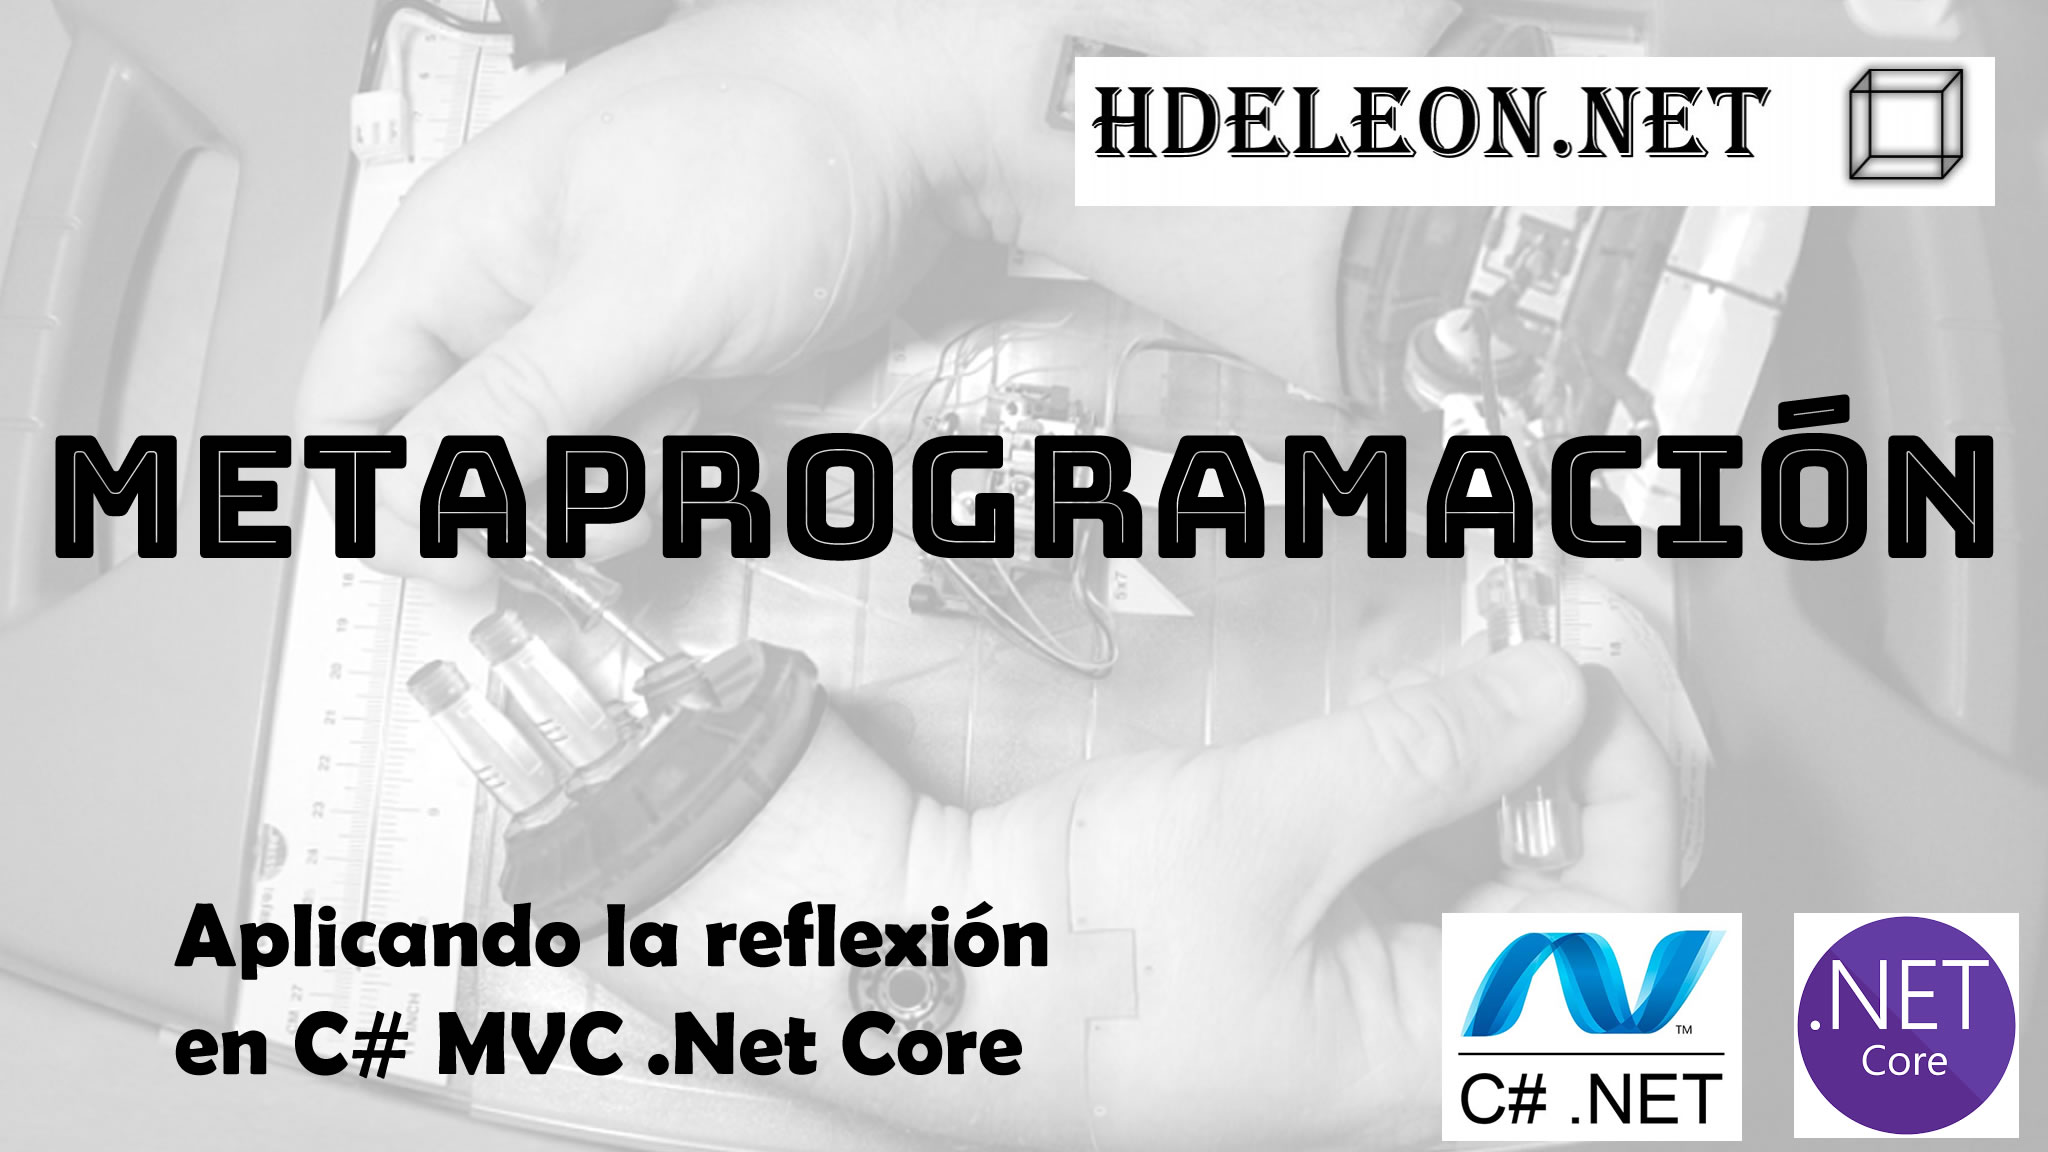 Aplicando la reflexión en C# MVC .Net Core, Creando formularios dinámicos, metaprogramación